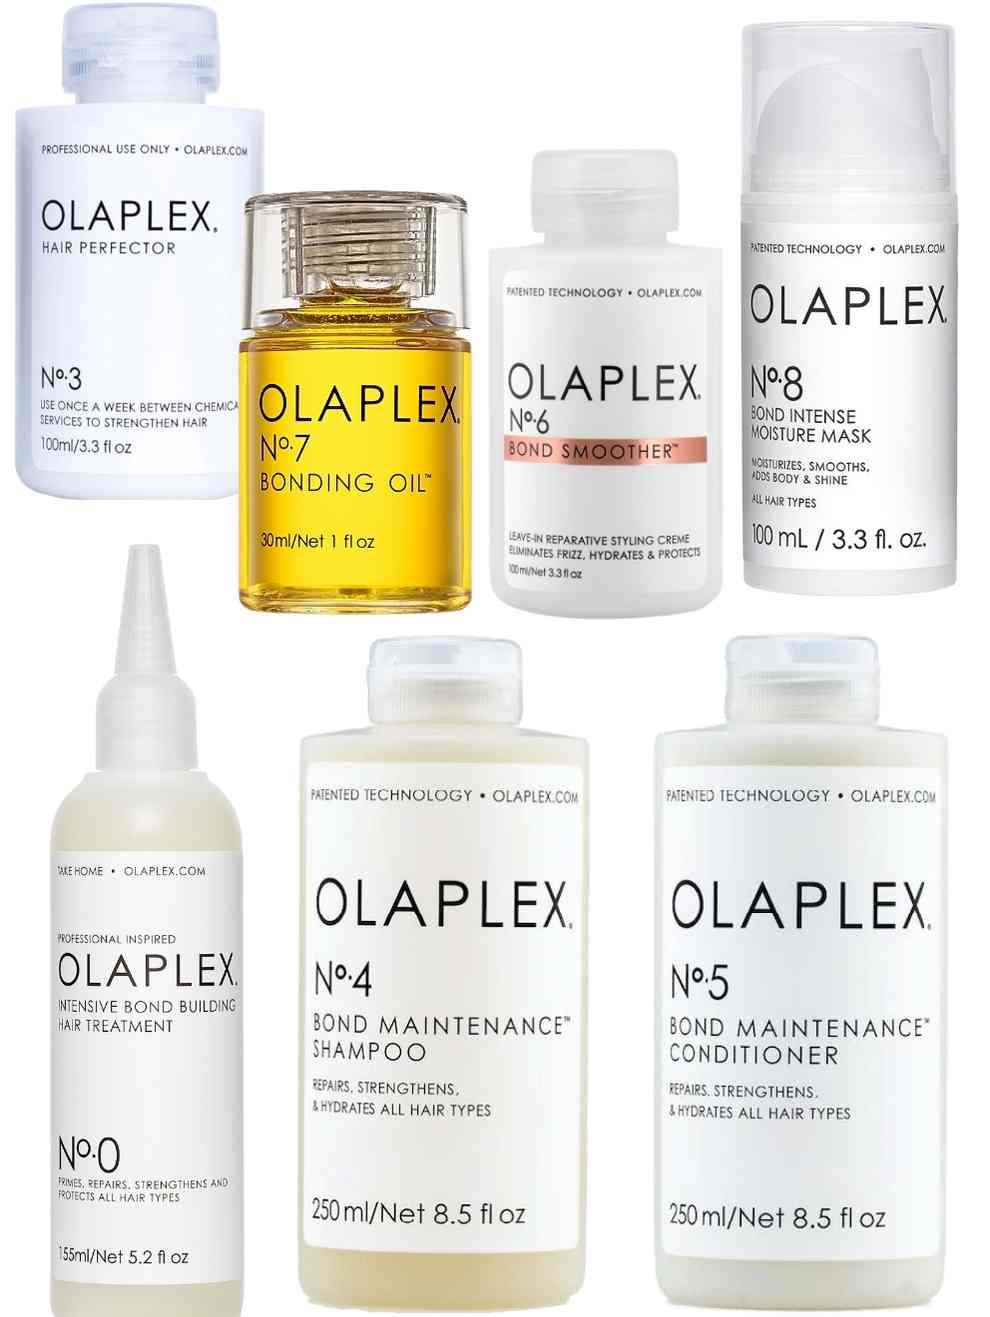 Olaplex Complete Collection Bundle (No. 0, 3, 4, 5, 6, 7, 8)